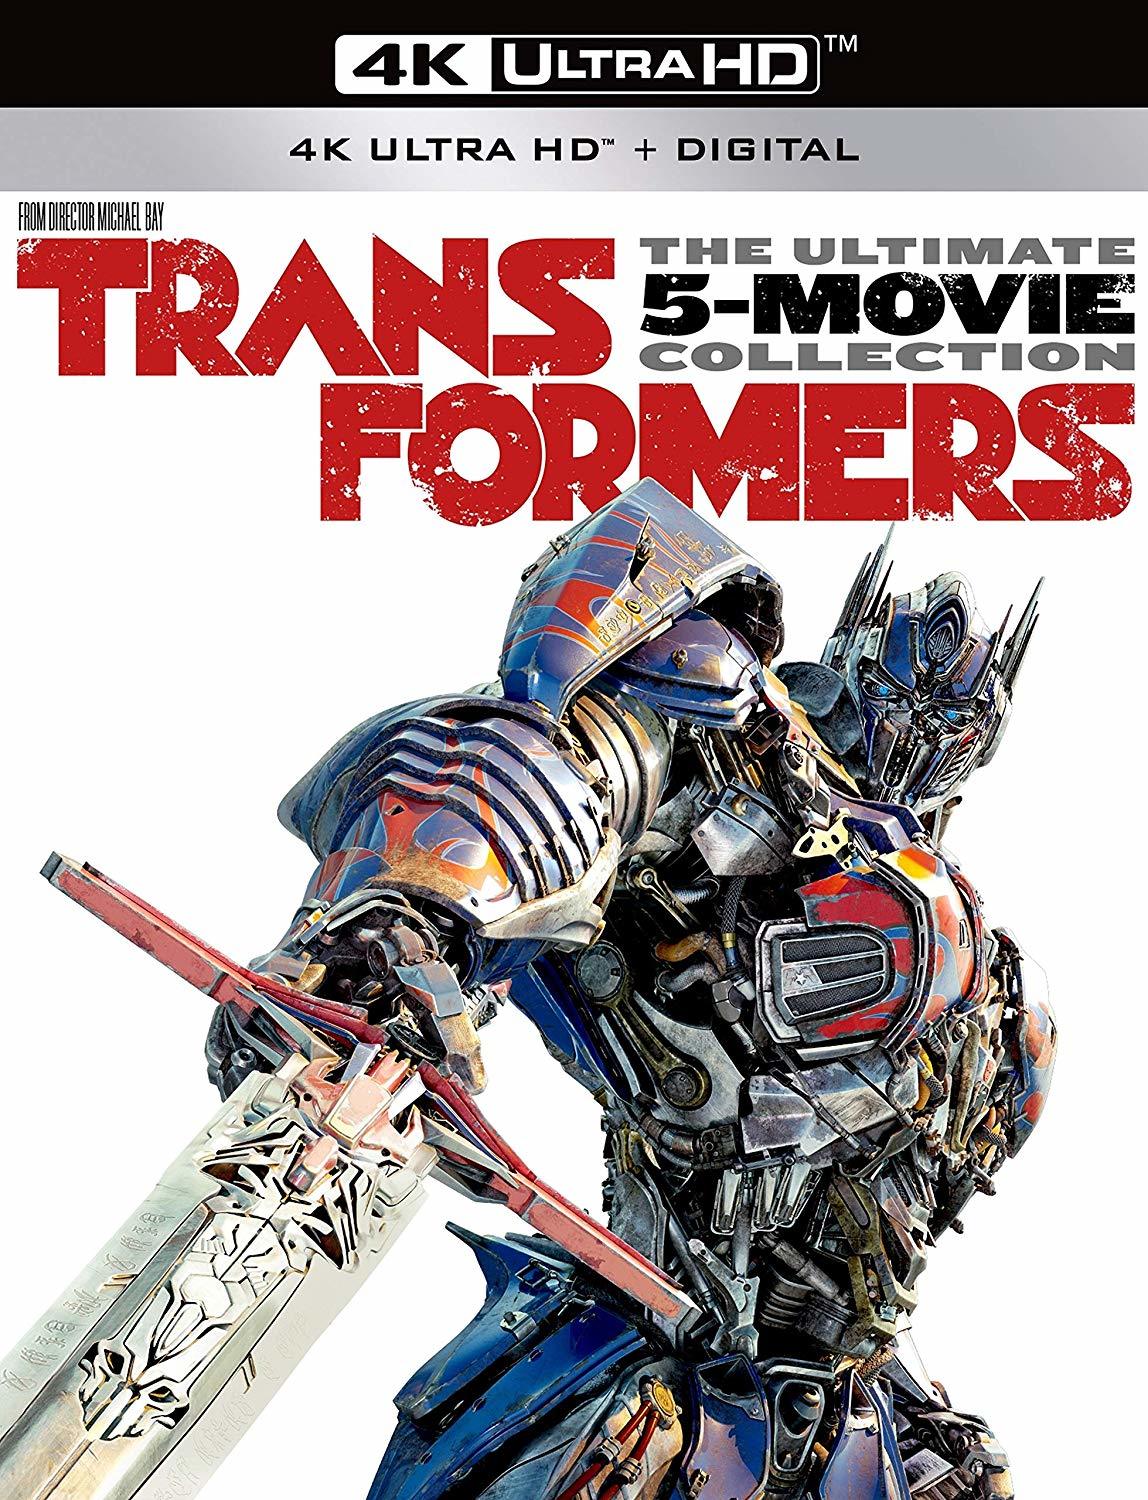 [变形金刚1].Transformers.2007.TW.UHD.BluRay.2160p.HEVC.TrueHD.7.1-TTG   86.41G-1.jpg